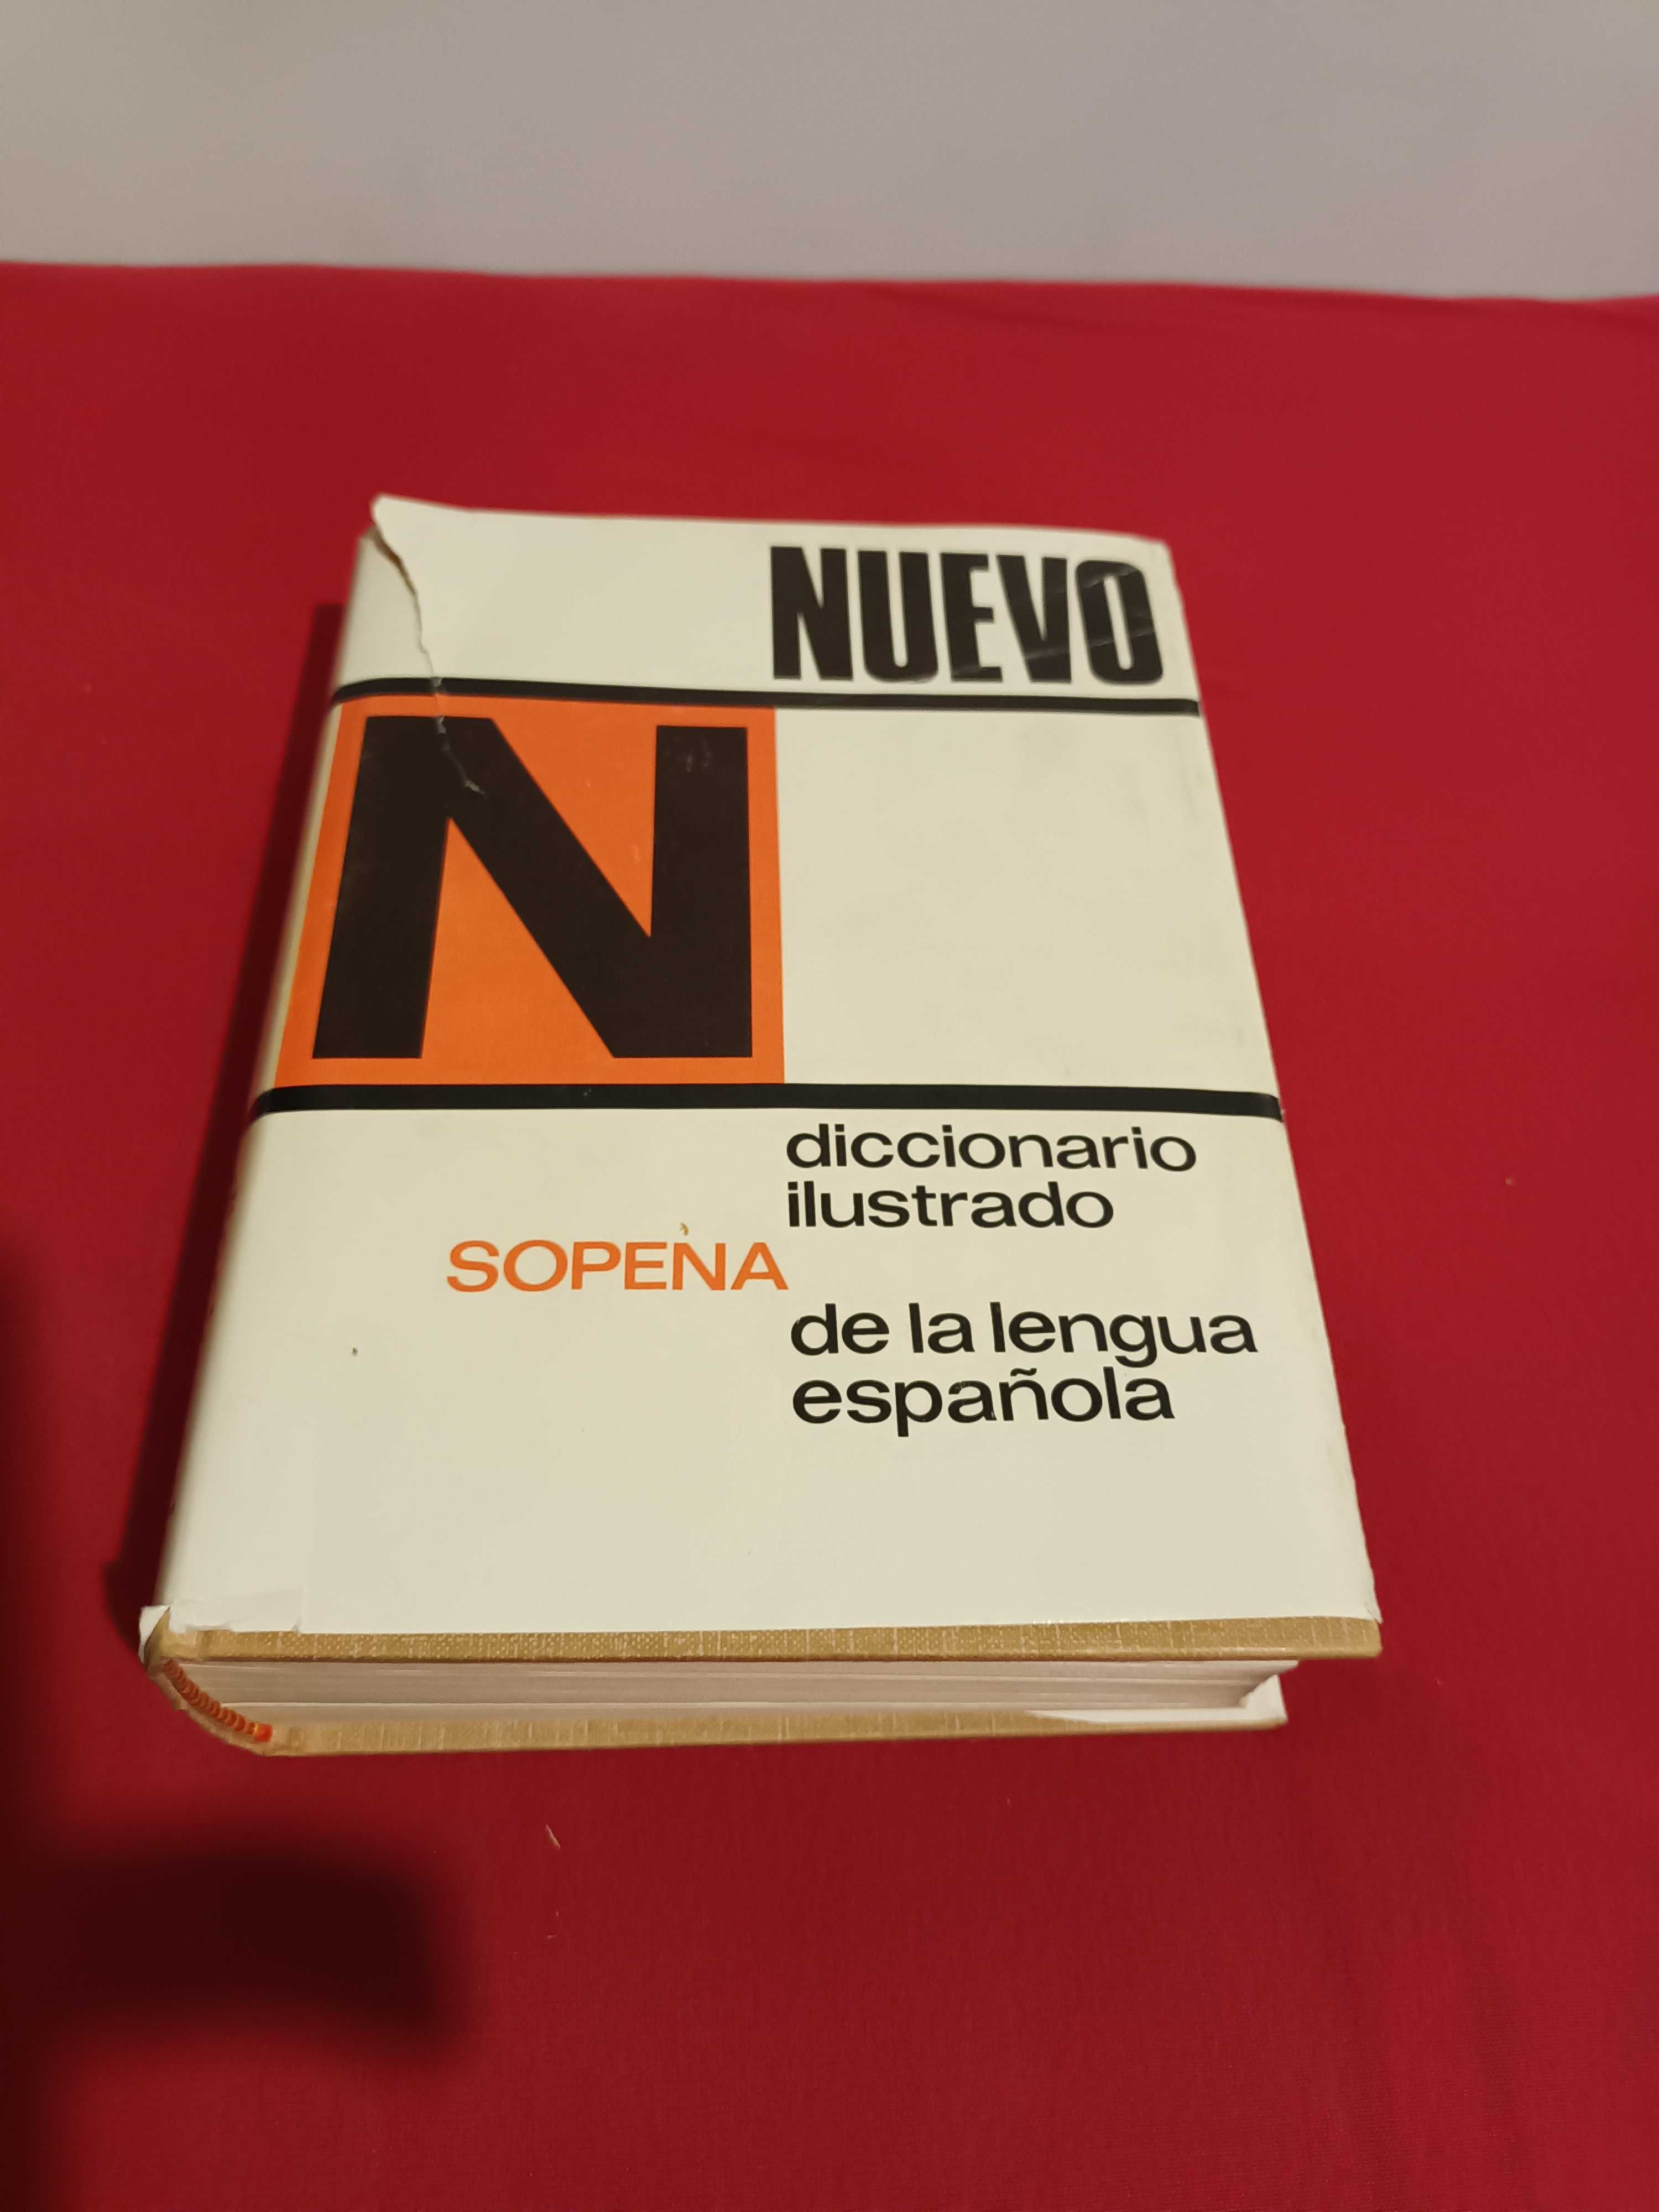 Obrazkowy słownik języka hiszpańskiego